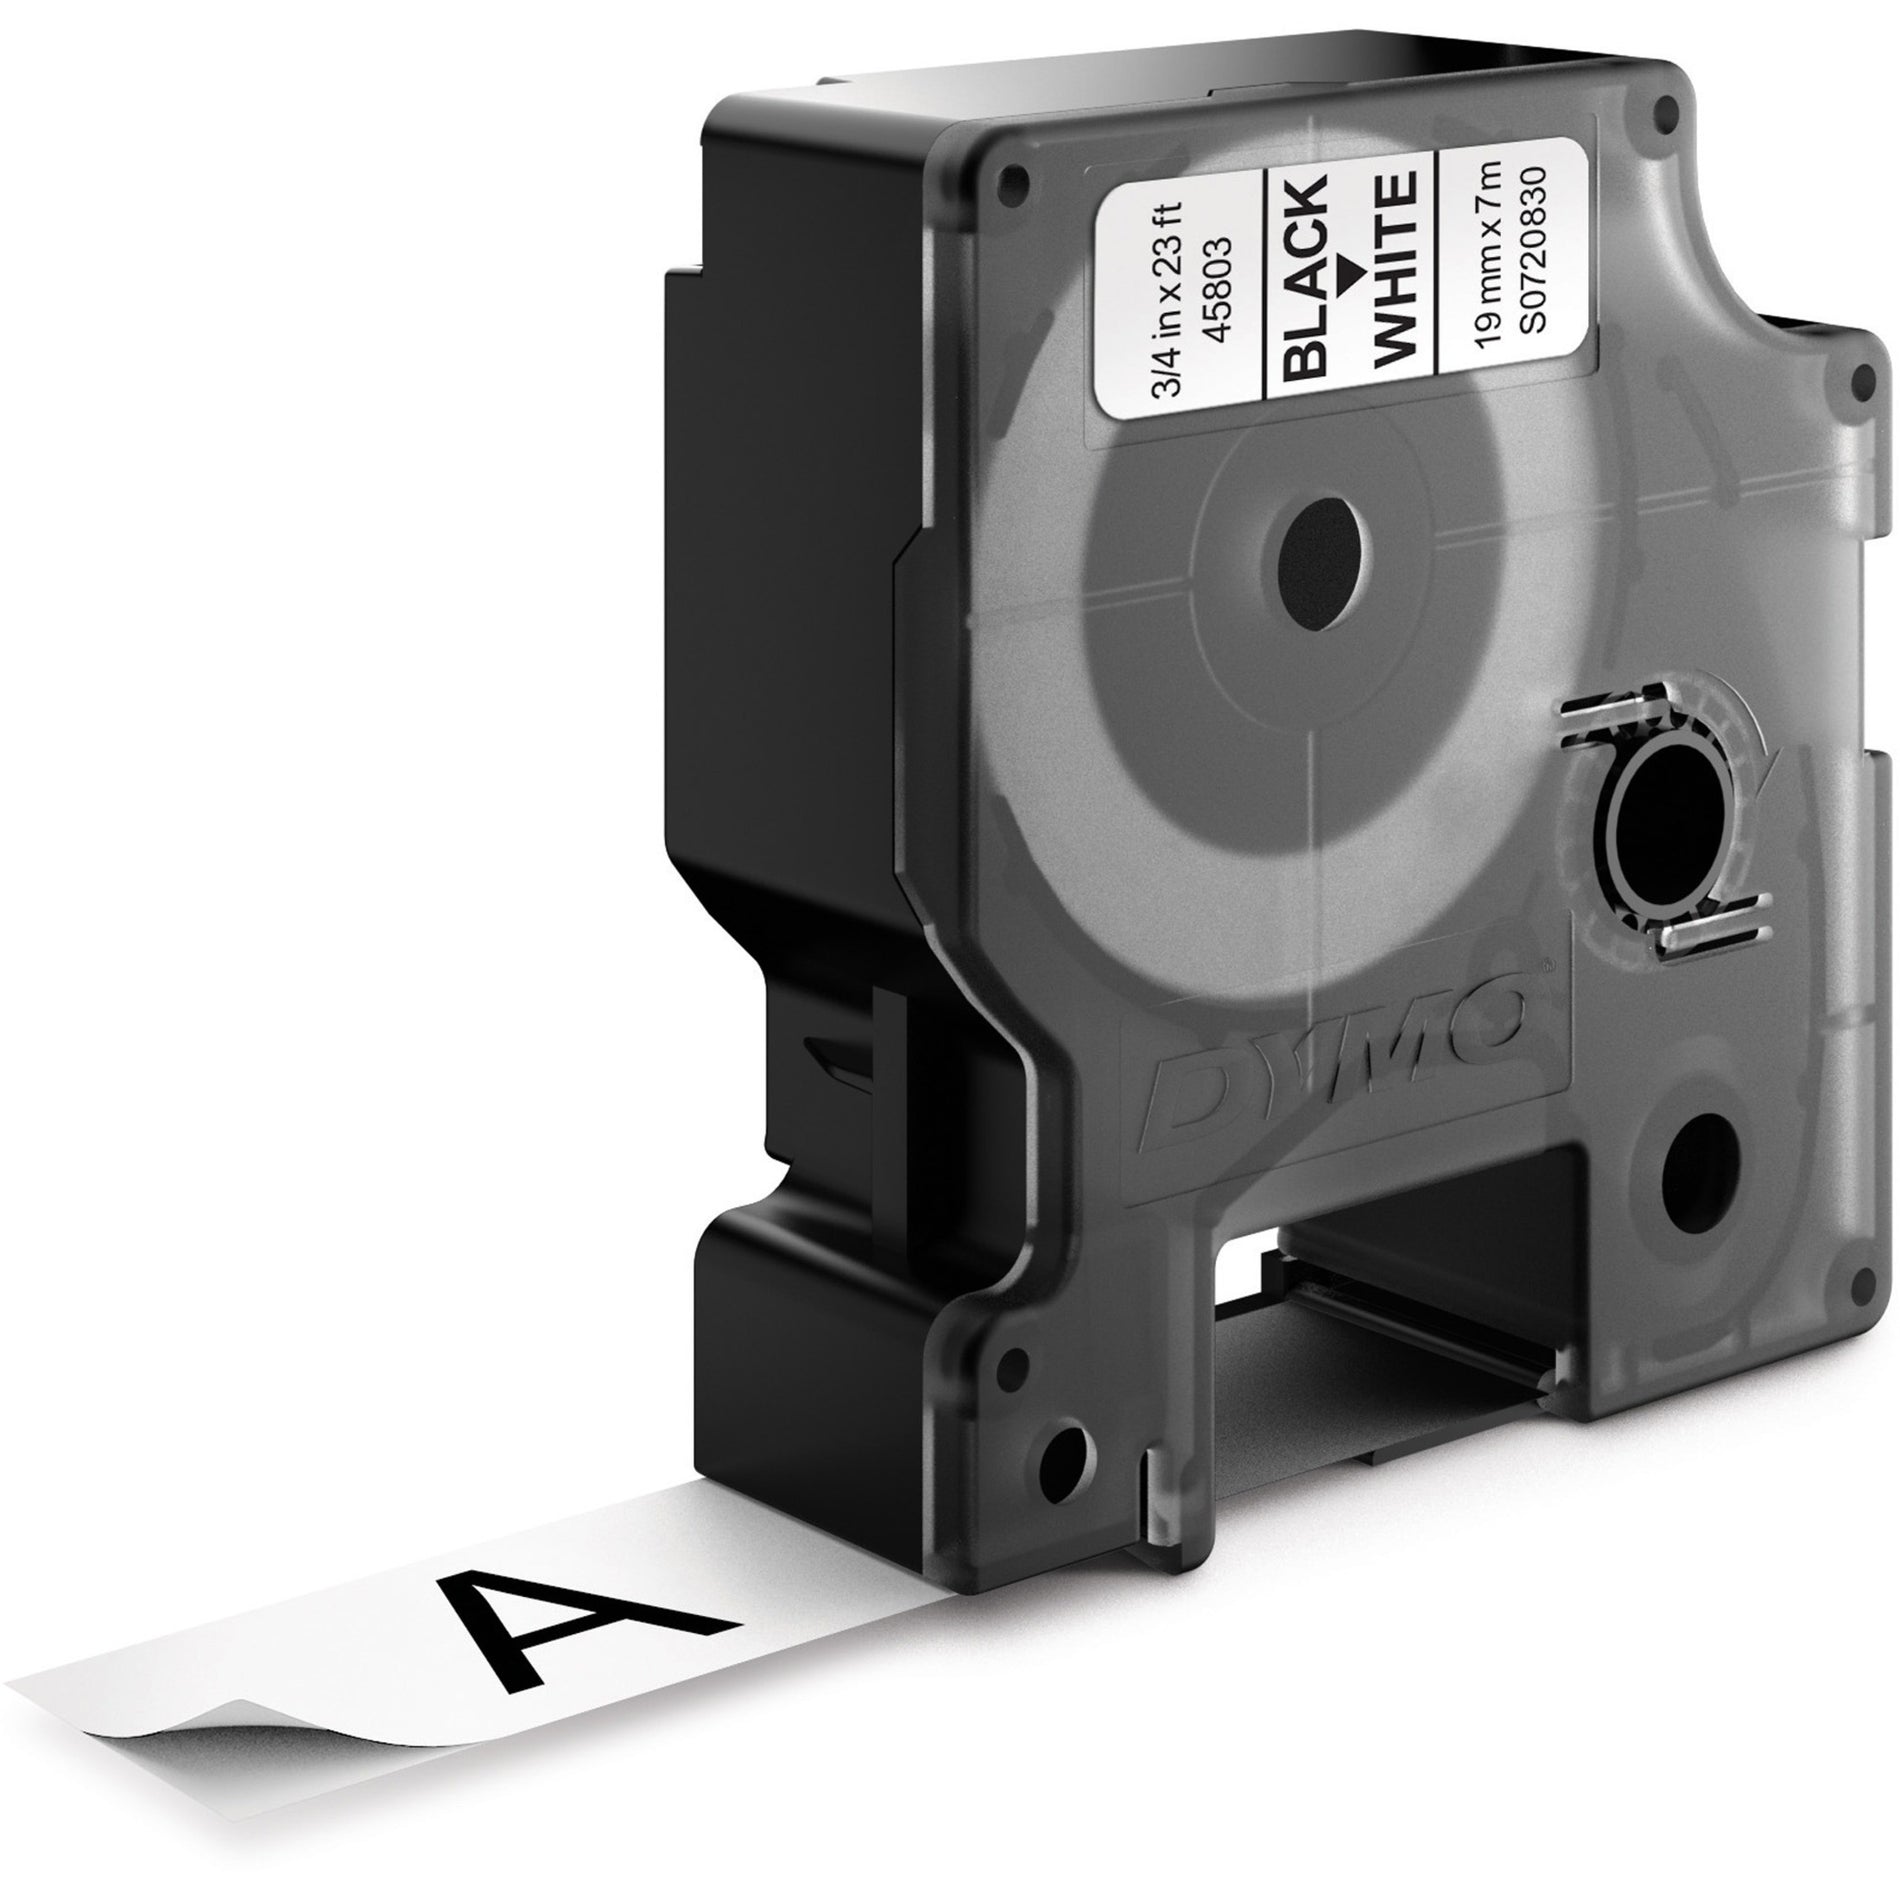 Dymo 45803 D1 Electronic Tape Cartridge, 3/4"x23' Size, Black/White